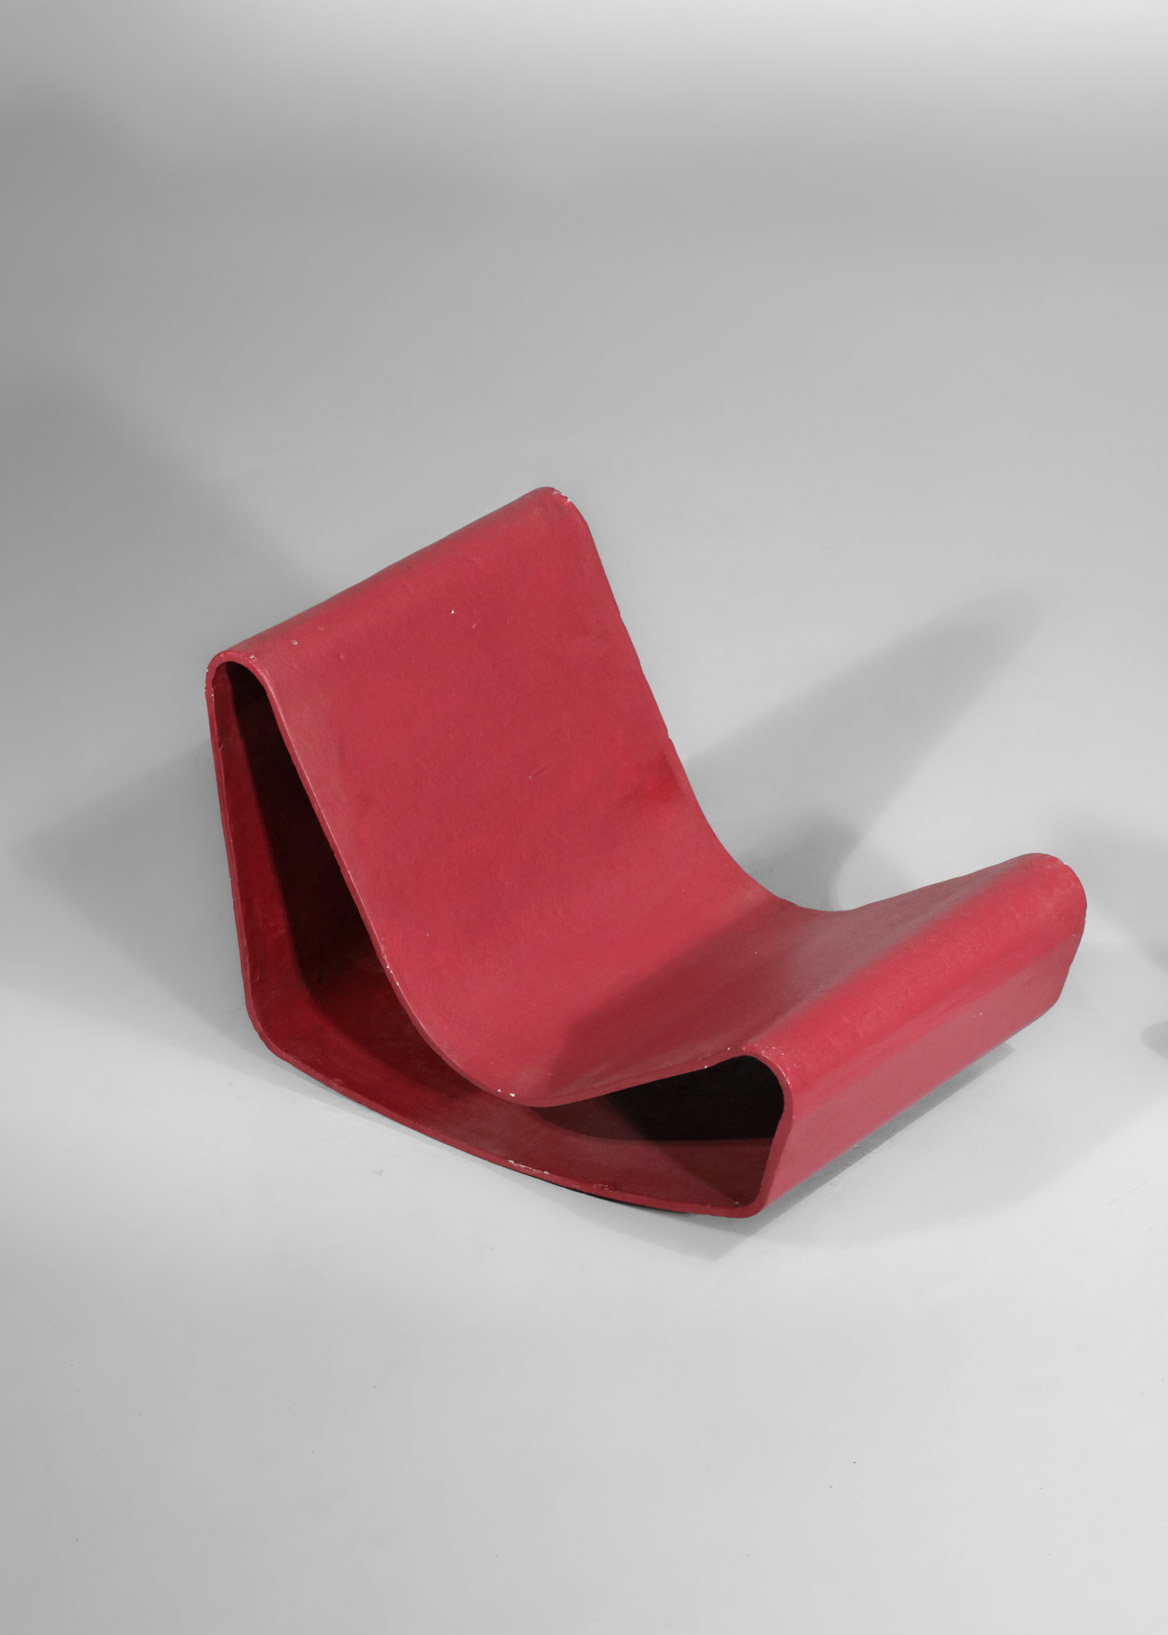 Pair of vintage - Guhl Danke armchairs Swiss design chair\